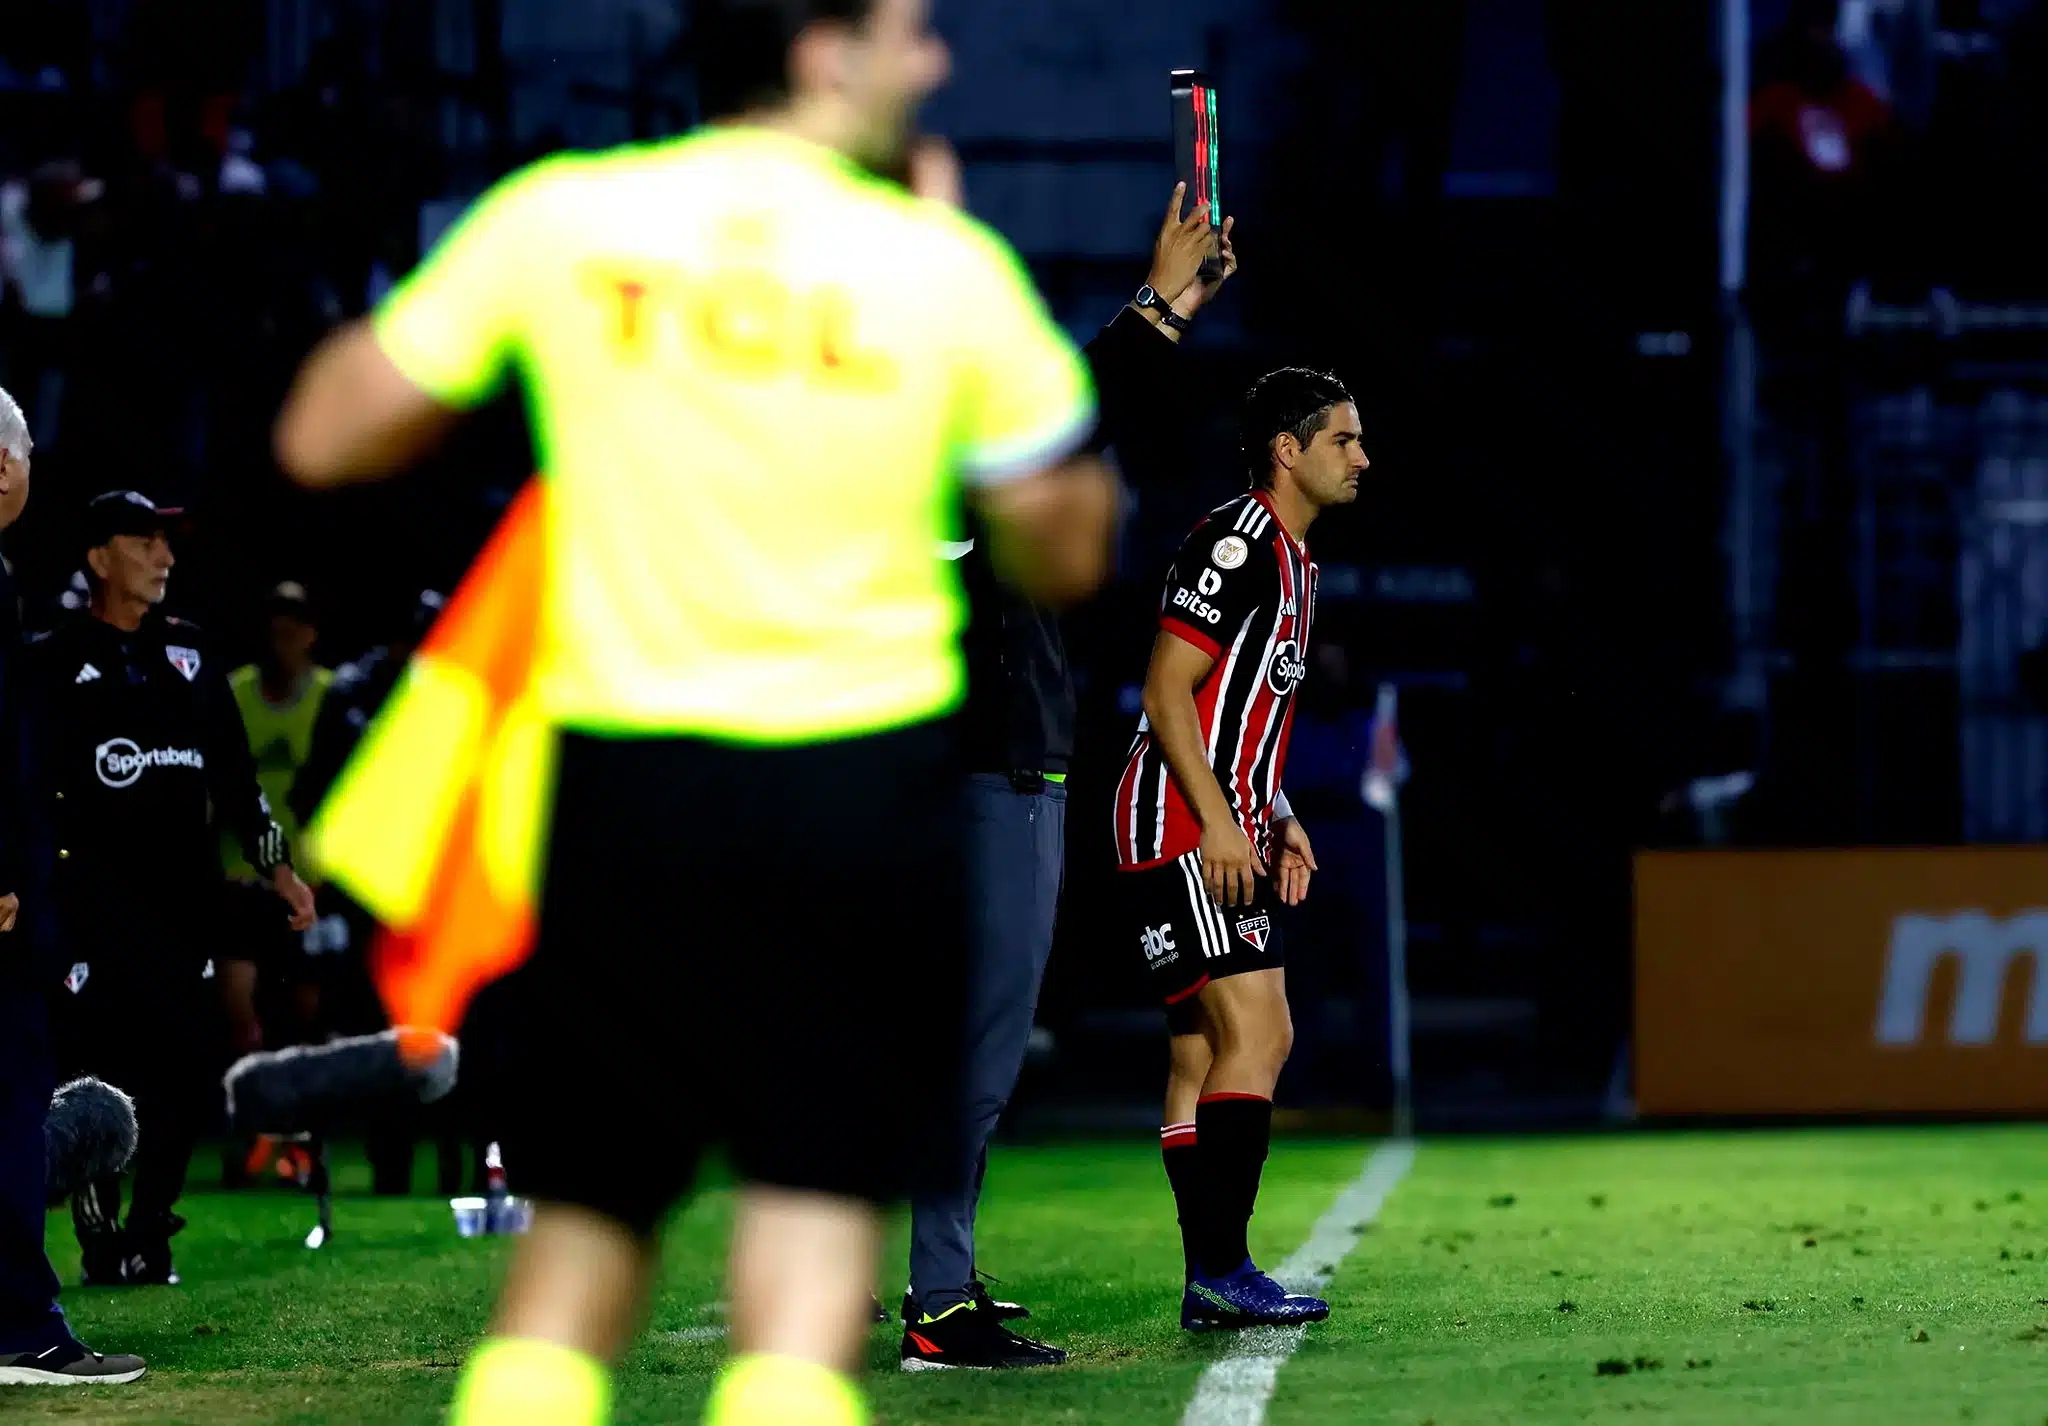 Pato fala após estreia pelo São Paulo: "Chorei muito, mas hoje é dia de sorrir"